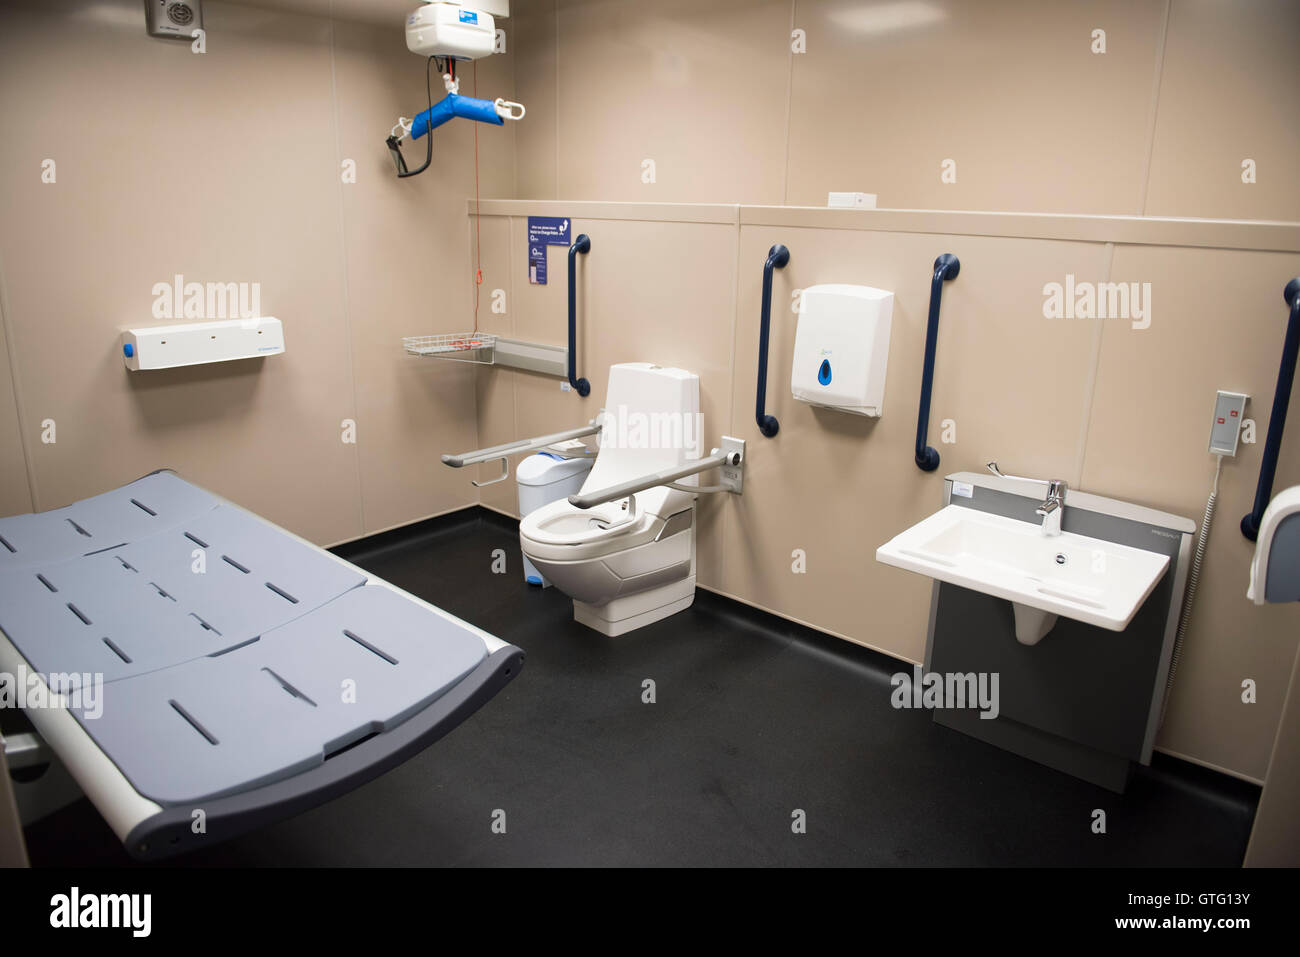 Behindertentoilette und Wickelraum Einrichtungen in einer öffentlichen Toilette. Stockfoto